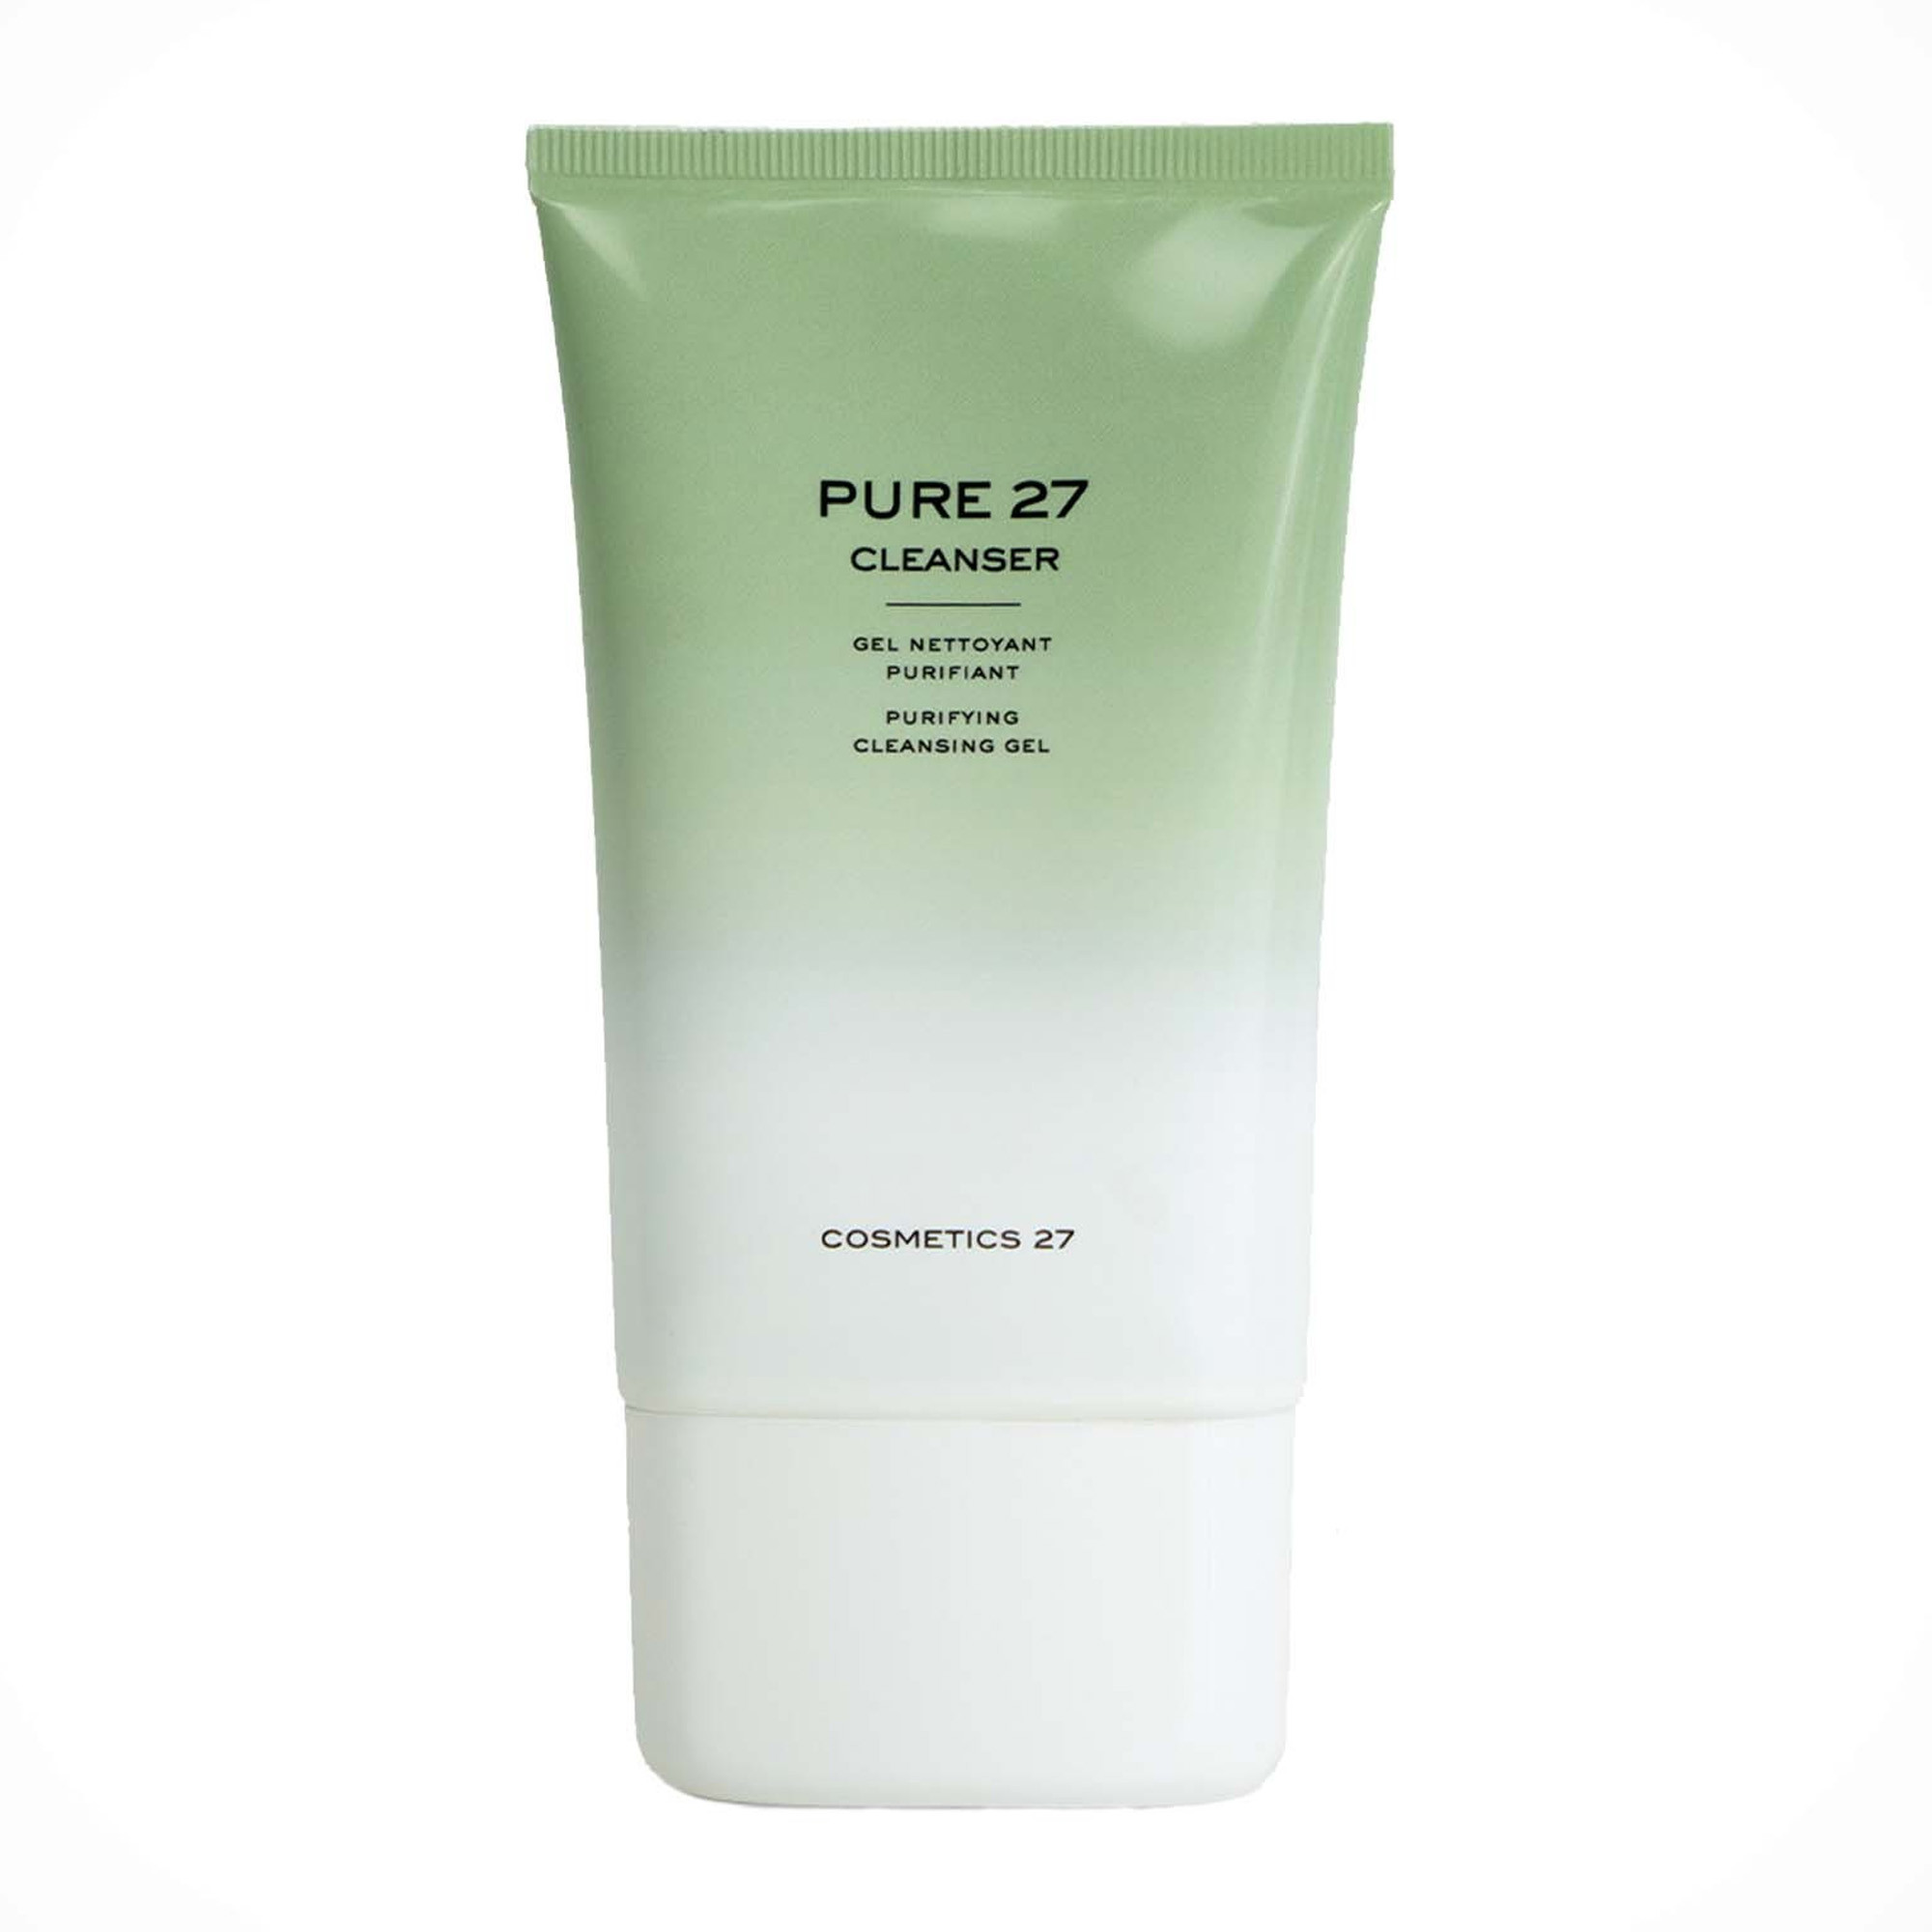 Очищающий гель для проблемной кожи Cosmetics 27 Pure 27 Cleanser